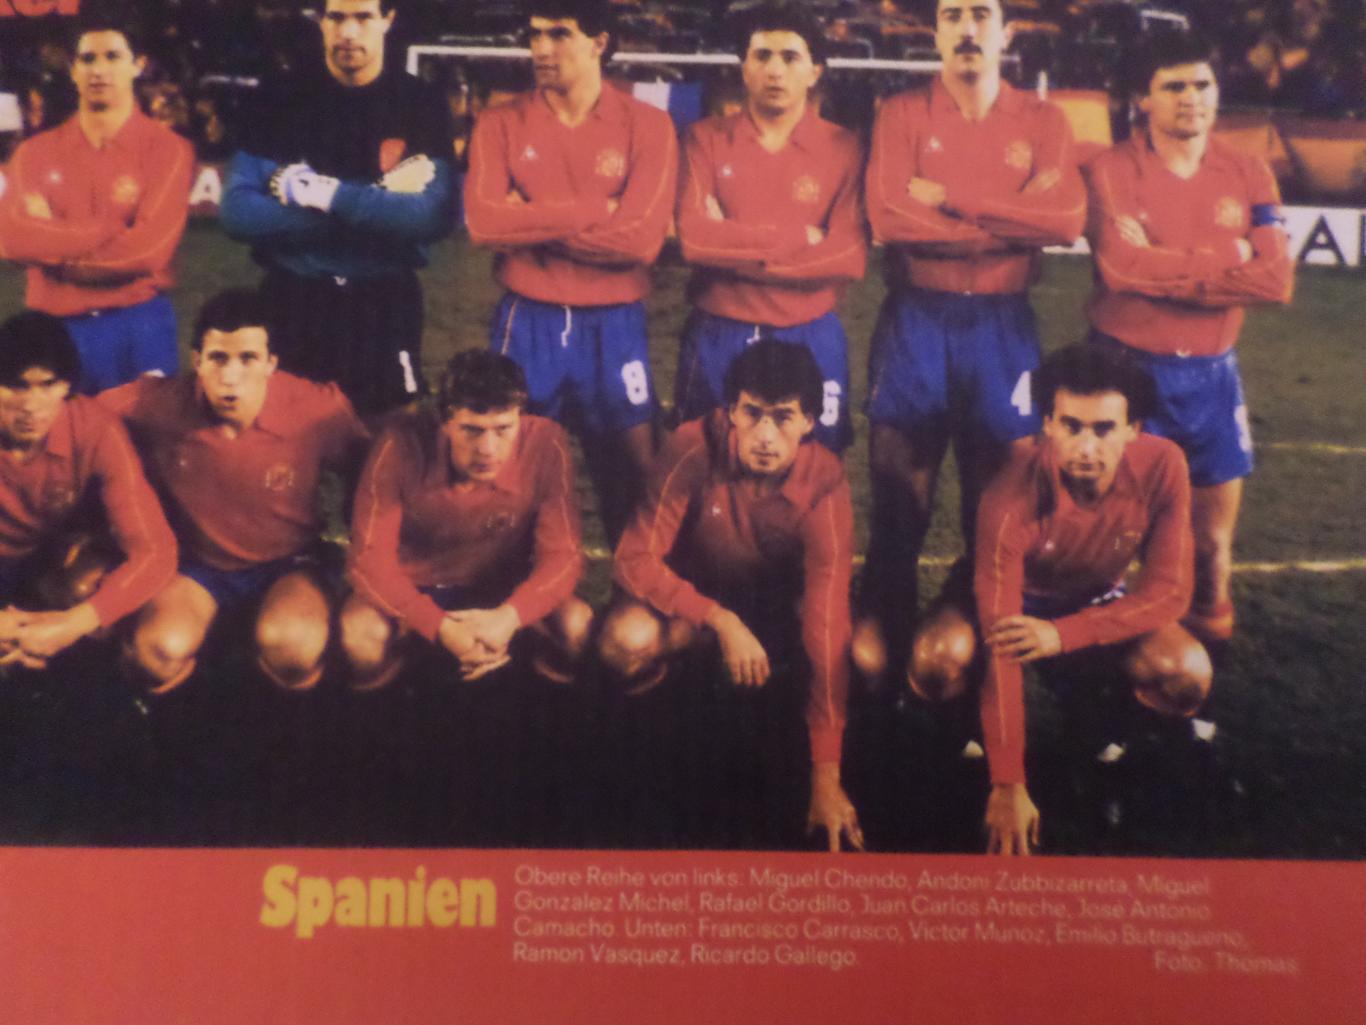 постер из журнала Киккер Германия ( цветная ксерокопия) сборная Испания